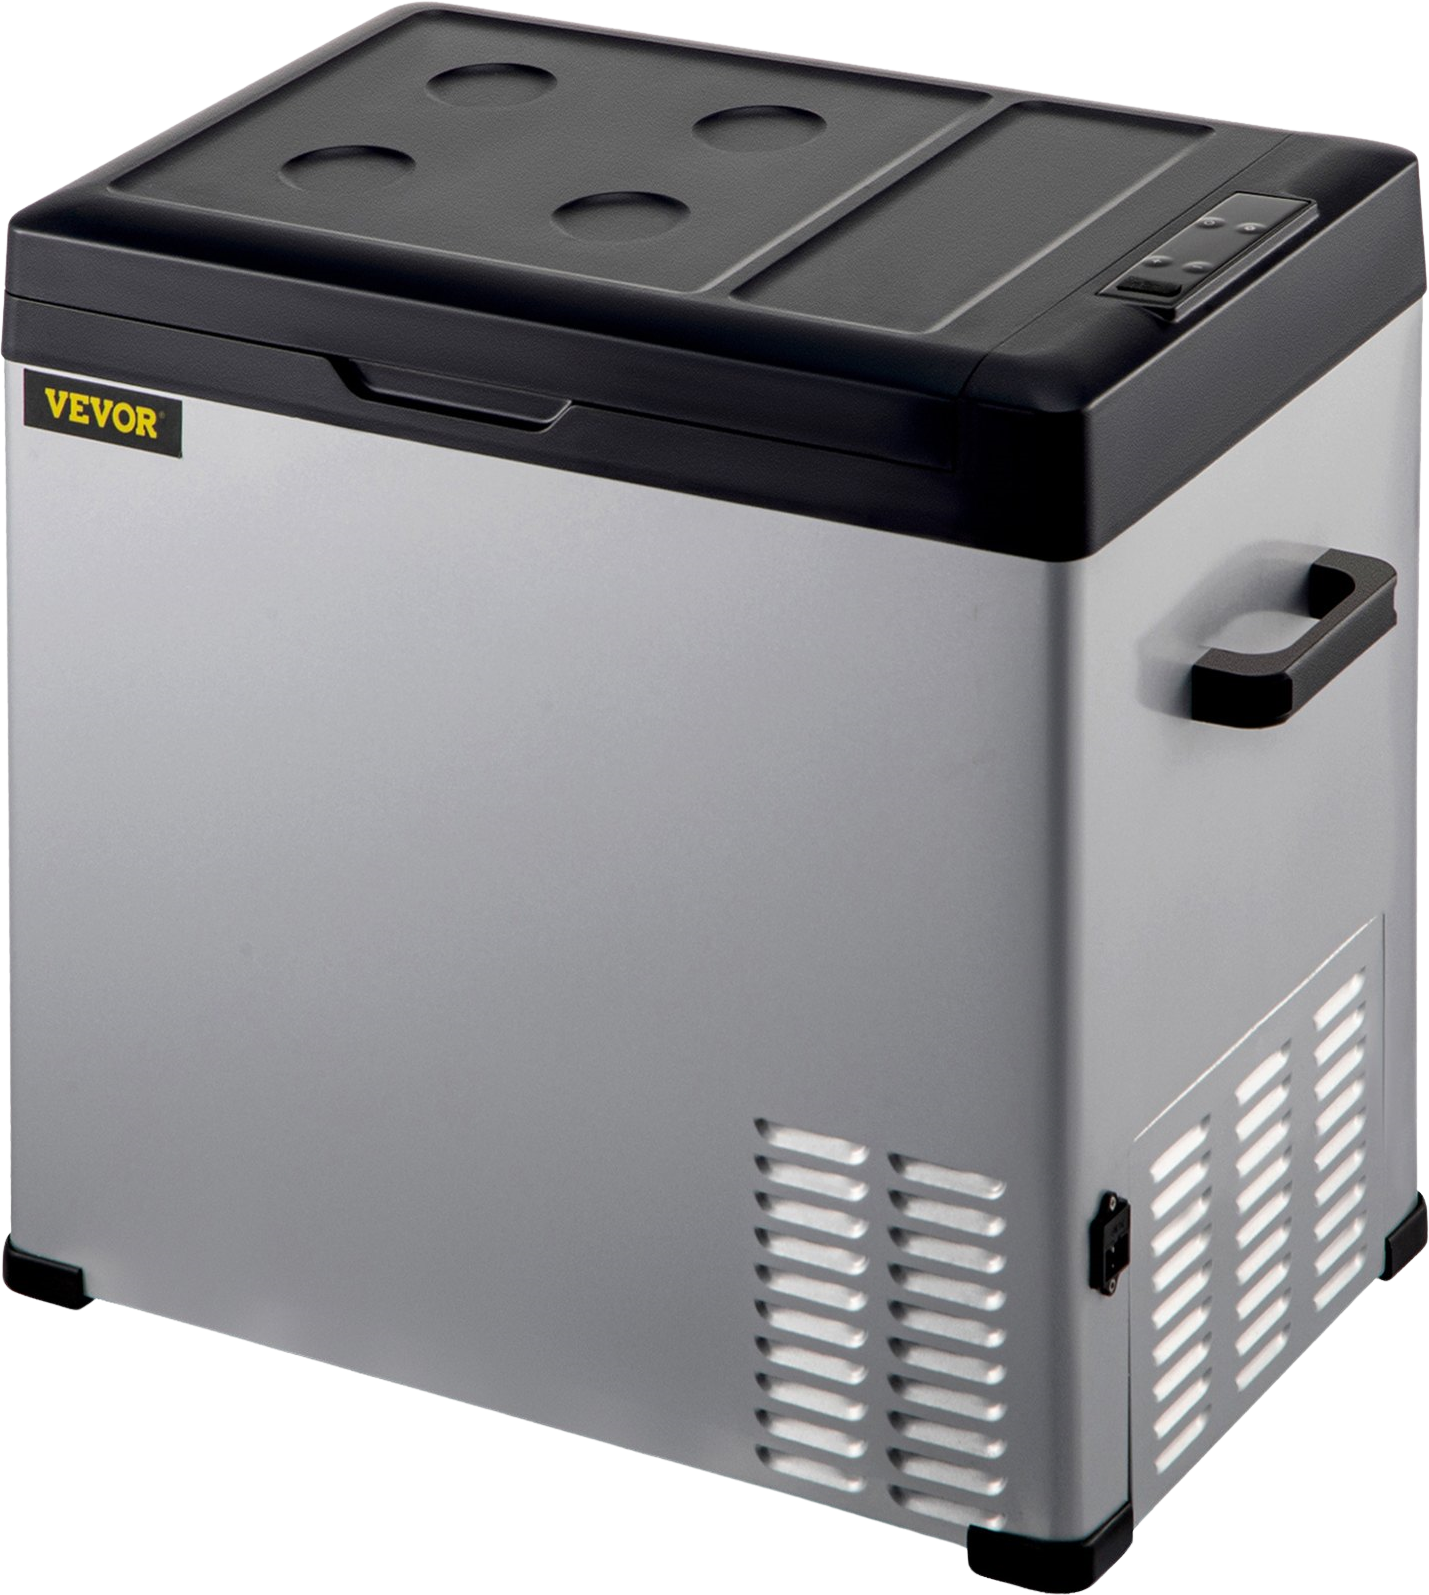 Vevor C50 Portable Compressor Refrigerator 53 Quart 12V/24V DC And 110-220V AC With App Control New